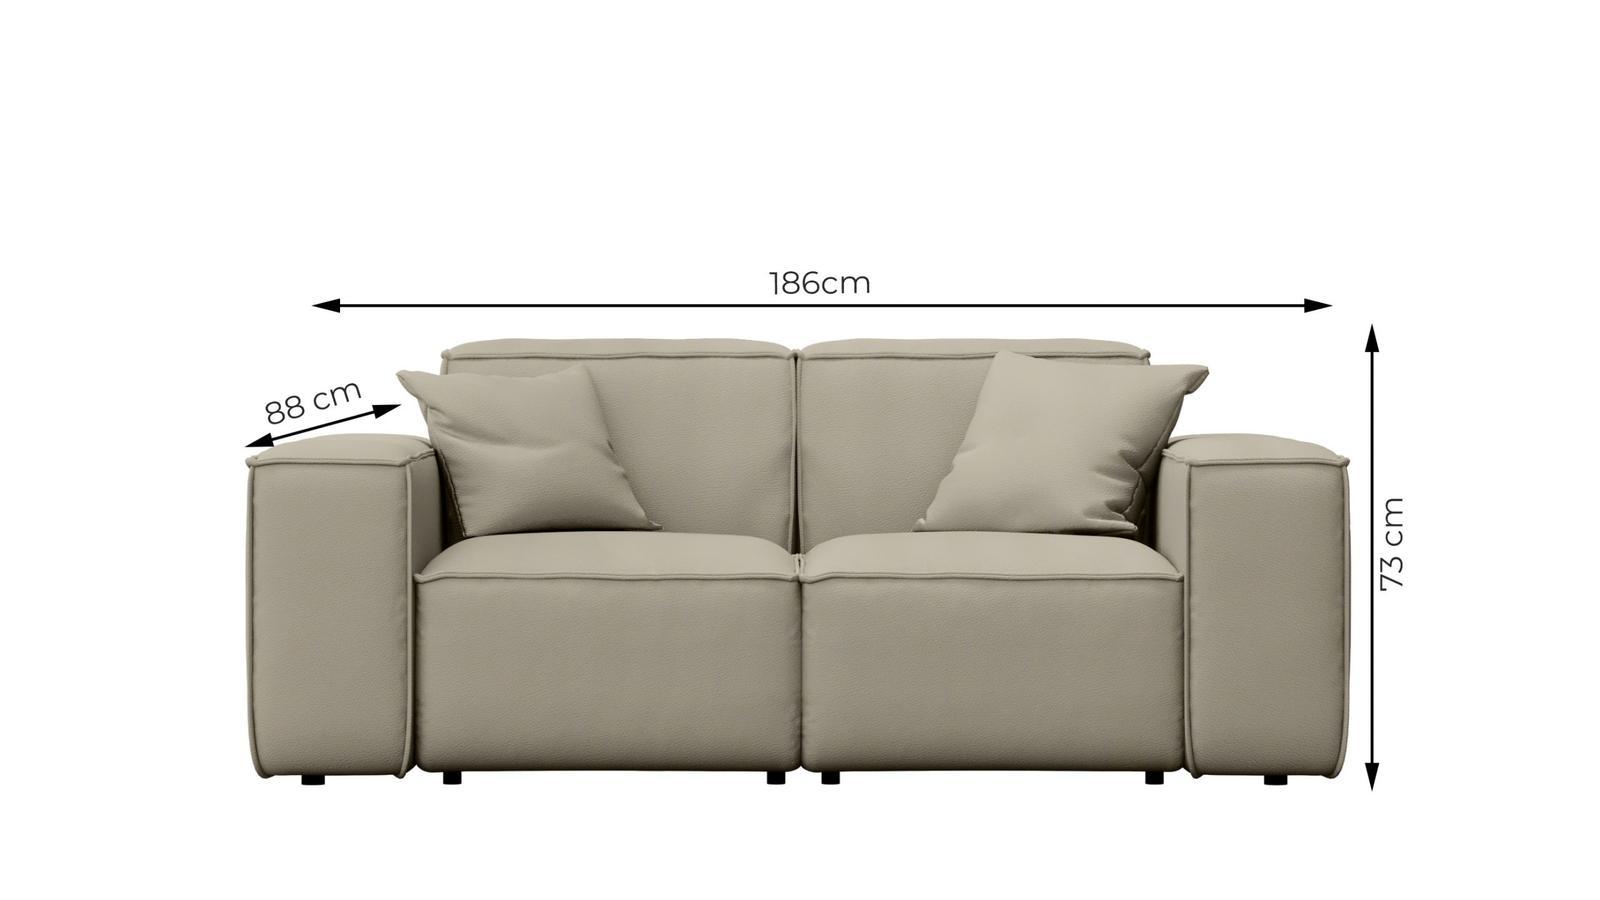 Sofa ogrodowa MALIBU 186x73x88 cm wodoodporna UV 2-os + 2 poduszki do ogrodu jasnoszara nr. 3